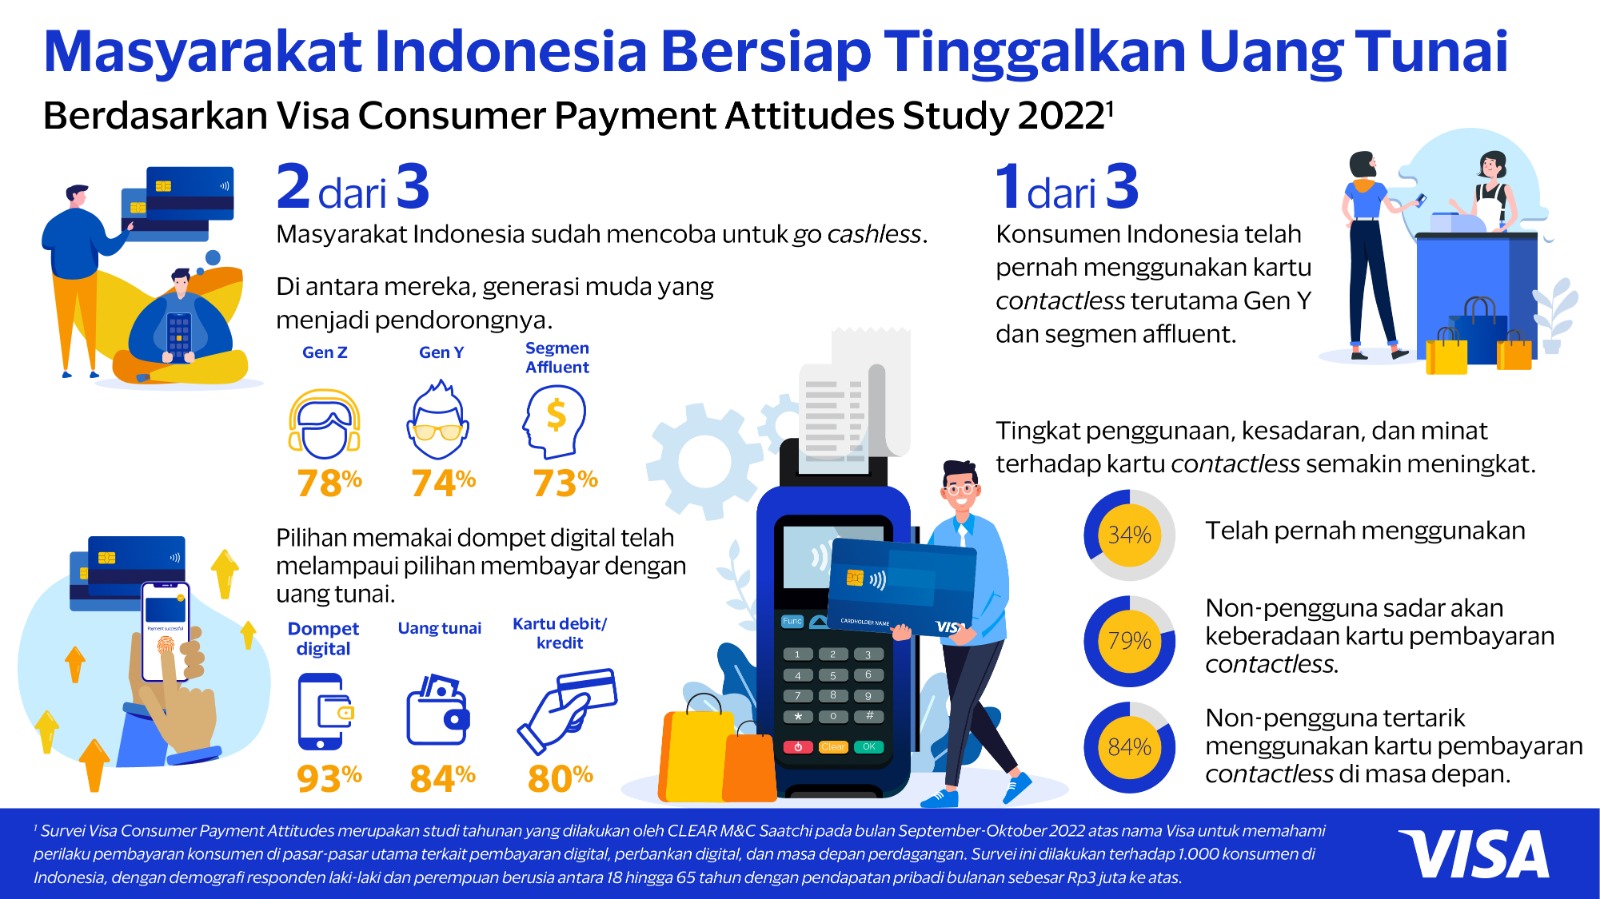 2 dari 3 Masyarakat Indonesia Bersiap Tinggalkan Uang Tunai. (Sumber gambar: VISA)